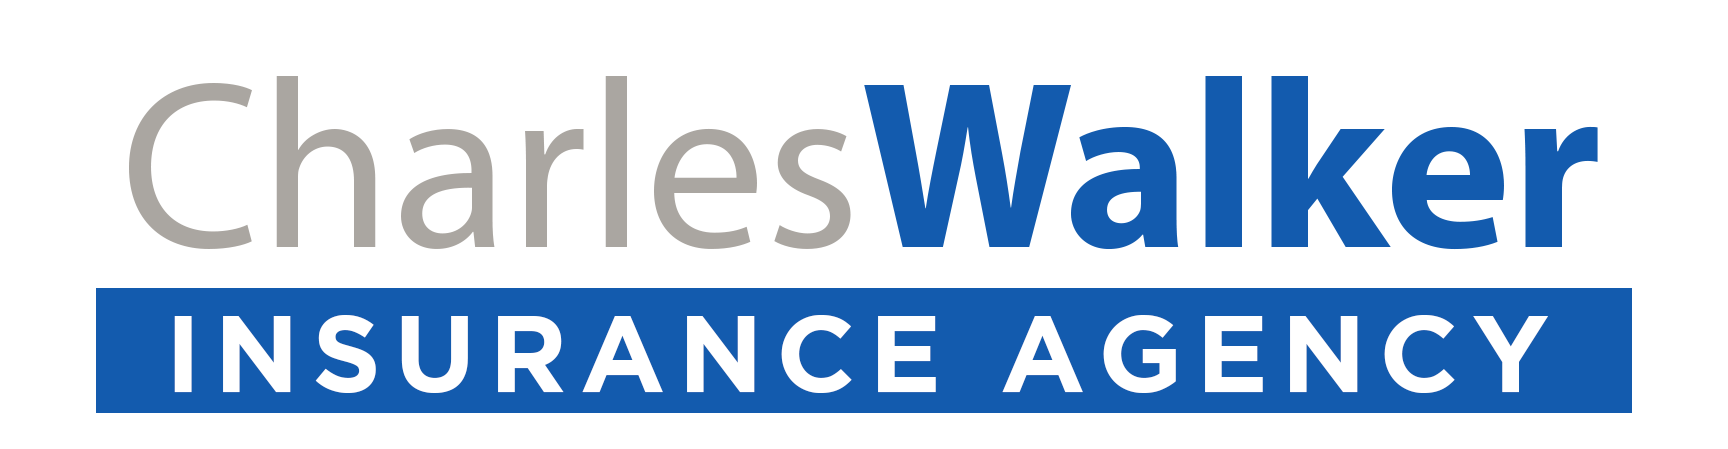 Charles Walker Insurance